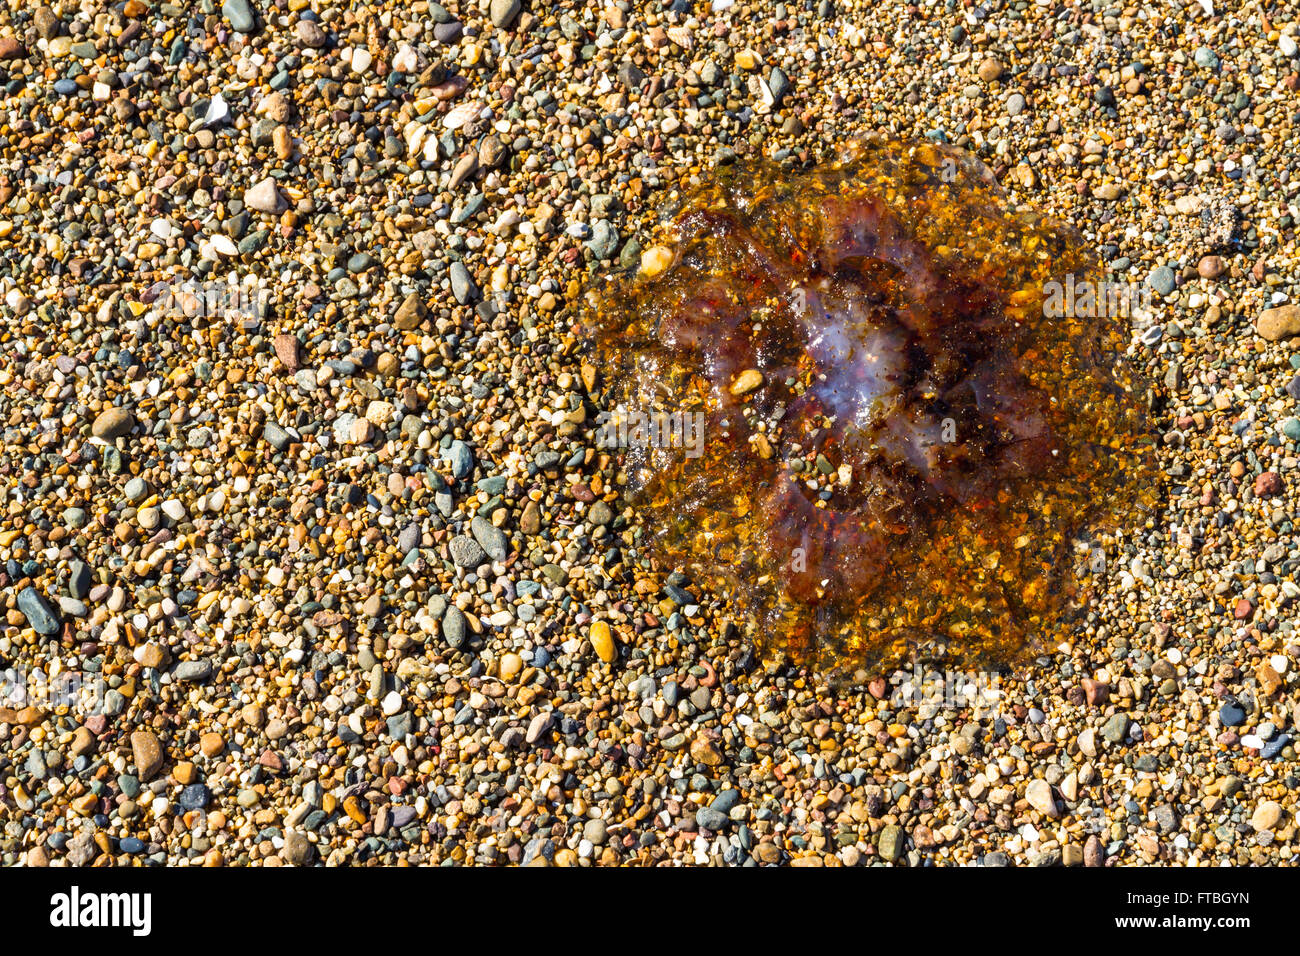 Medusas u jellie, parte de los cnidarios se lavan en Pebble Beach. Foto de stock